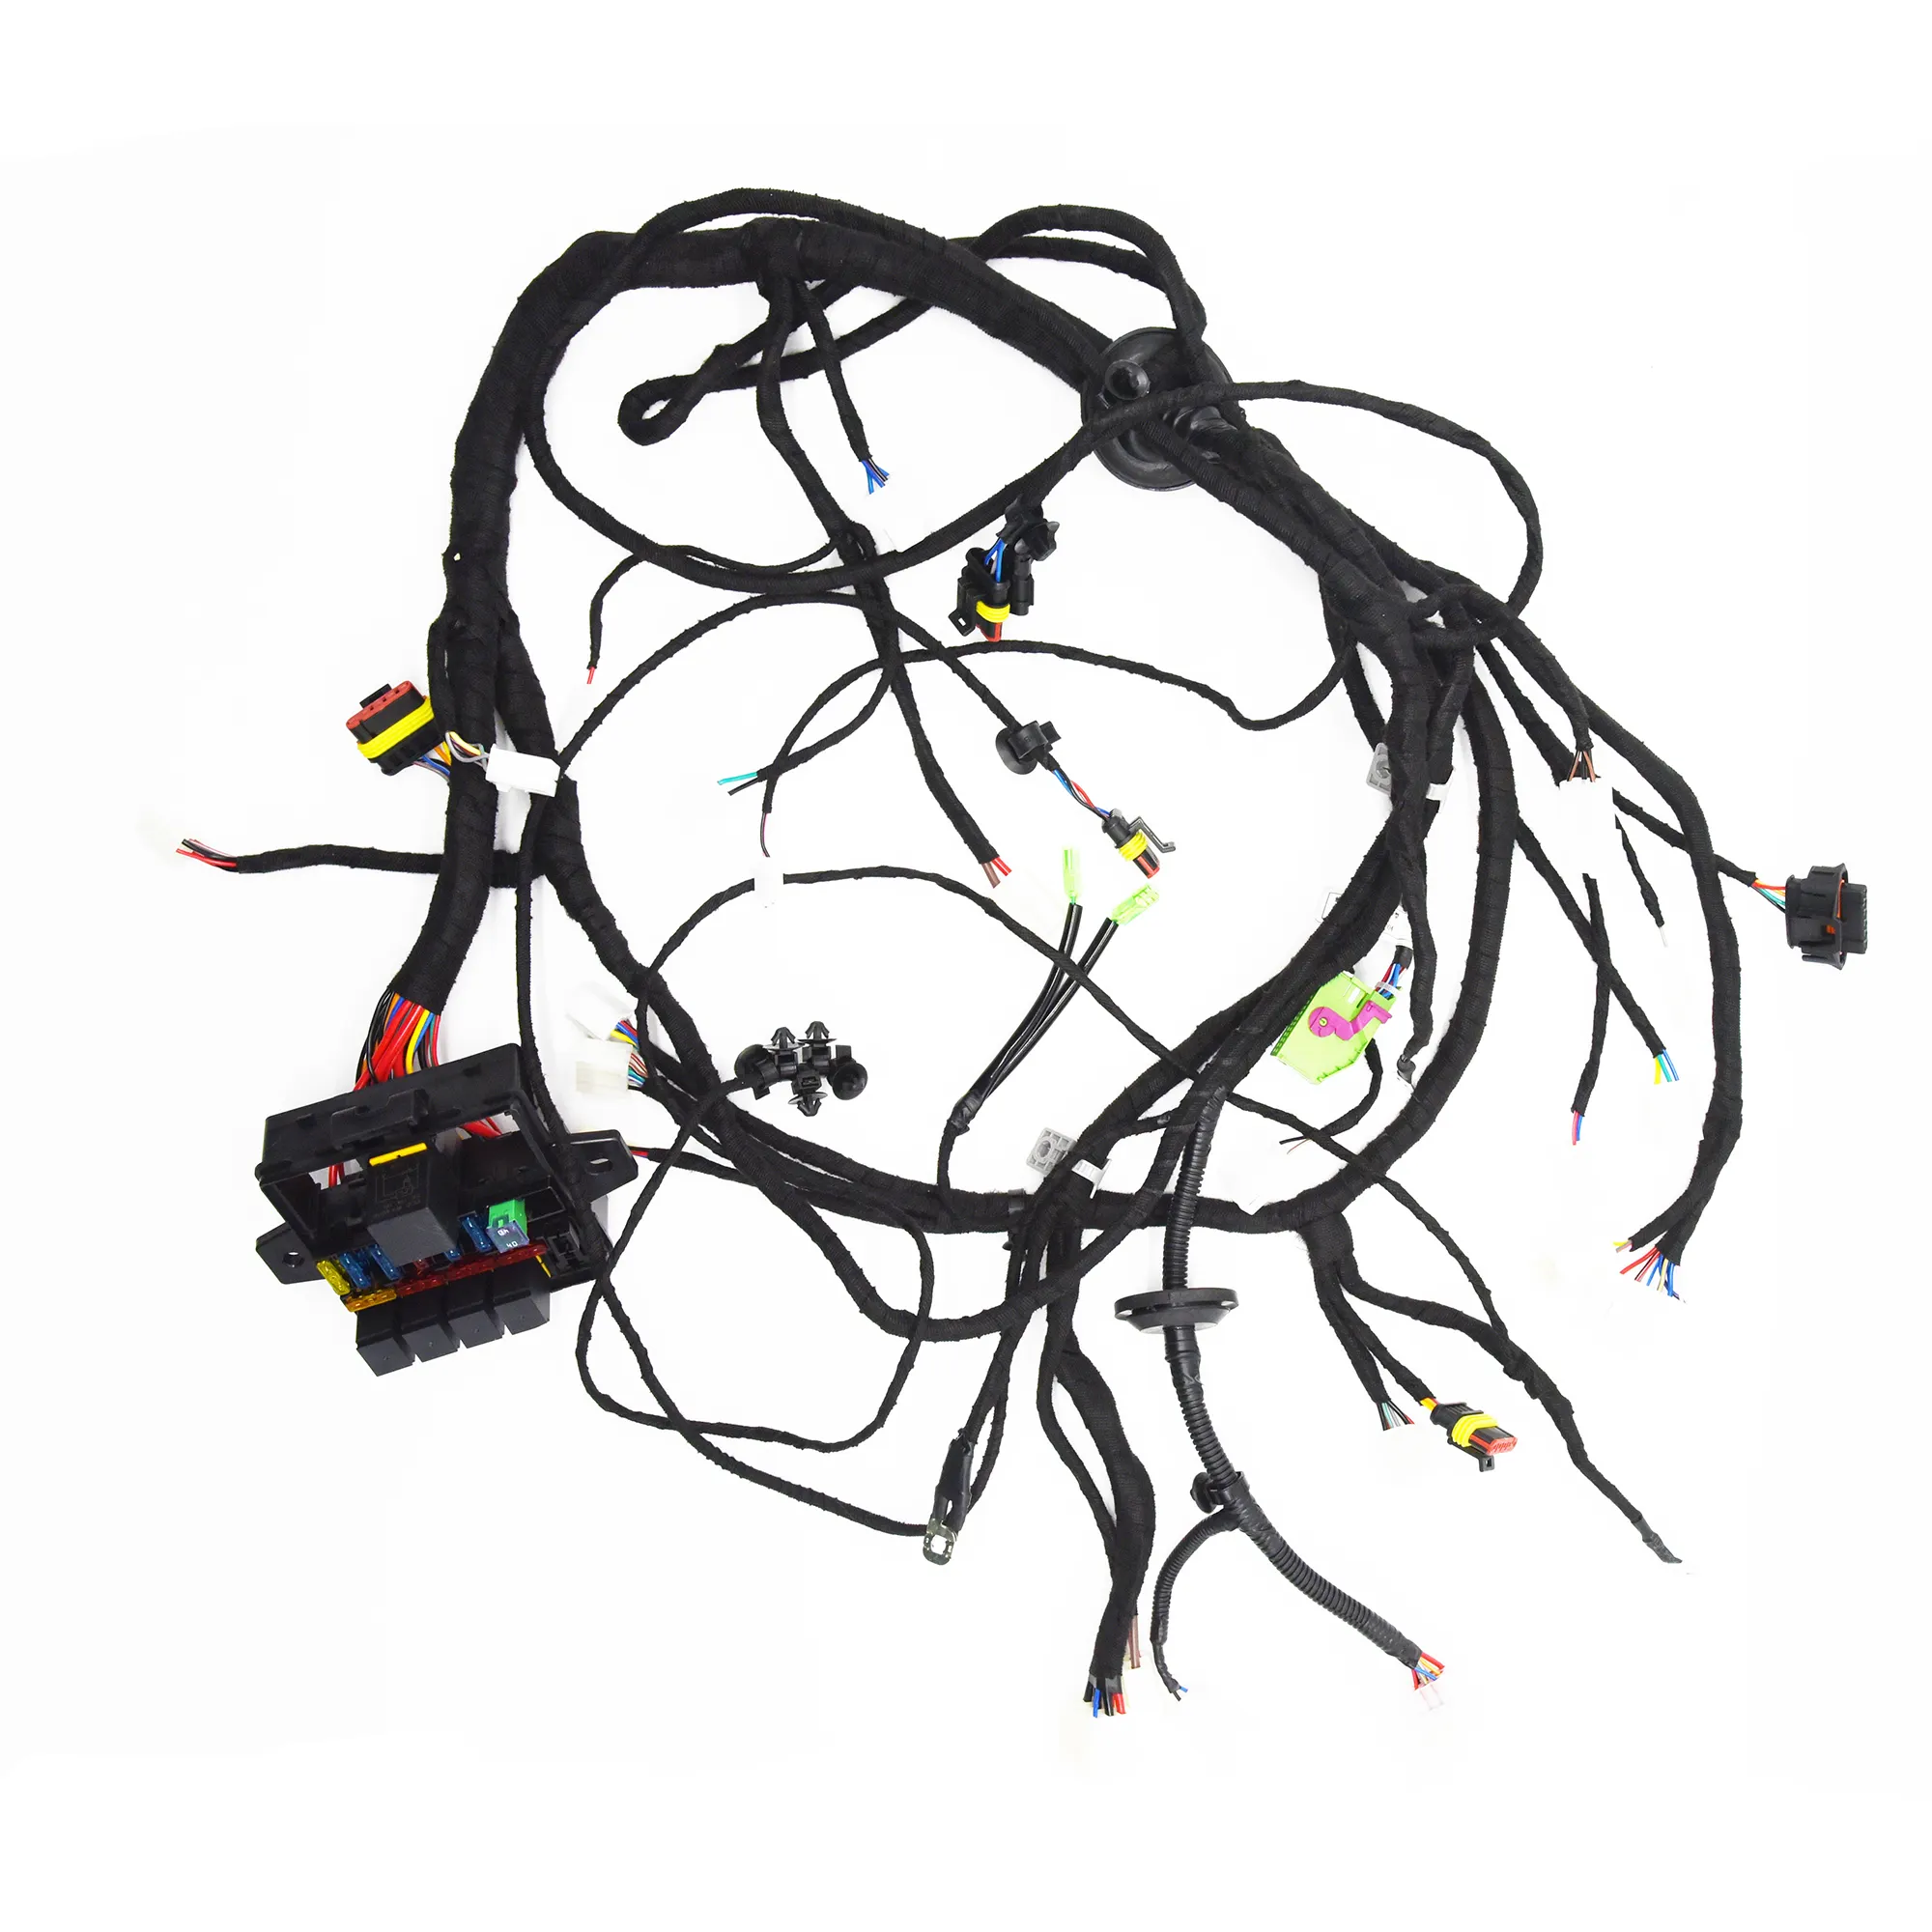 Produsen OEM 2 cara konektor Radio mobil harnes kabel dan adaptor antena Kombo untuk Stereo kustom mobil